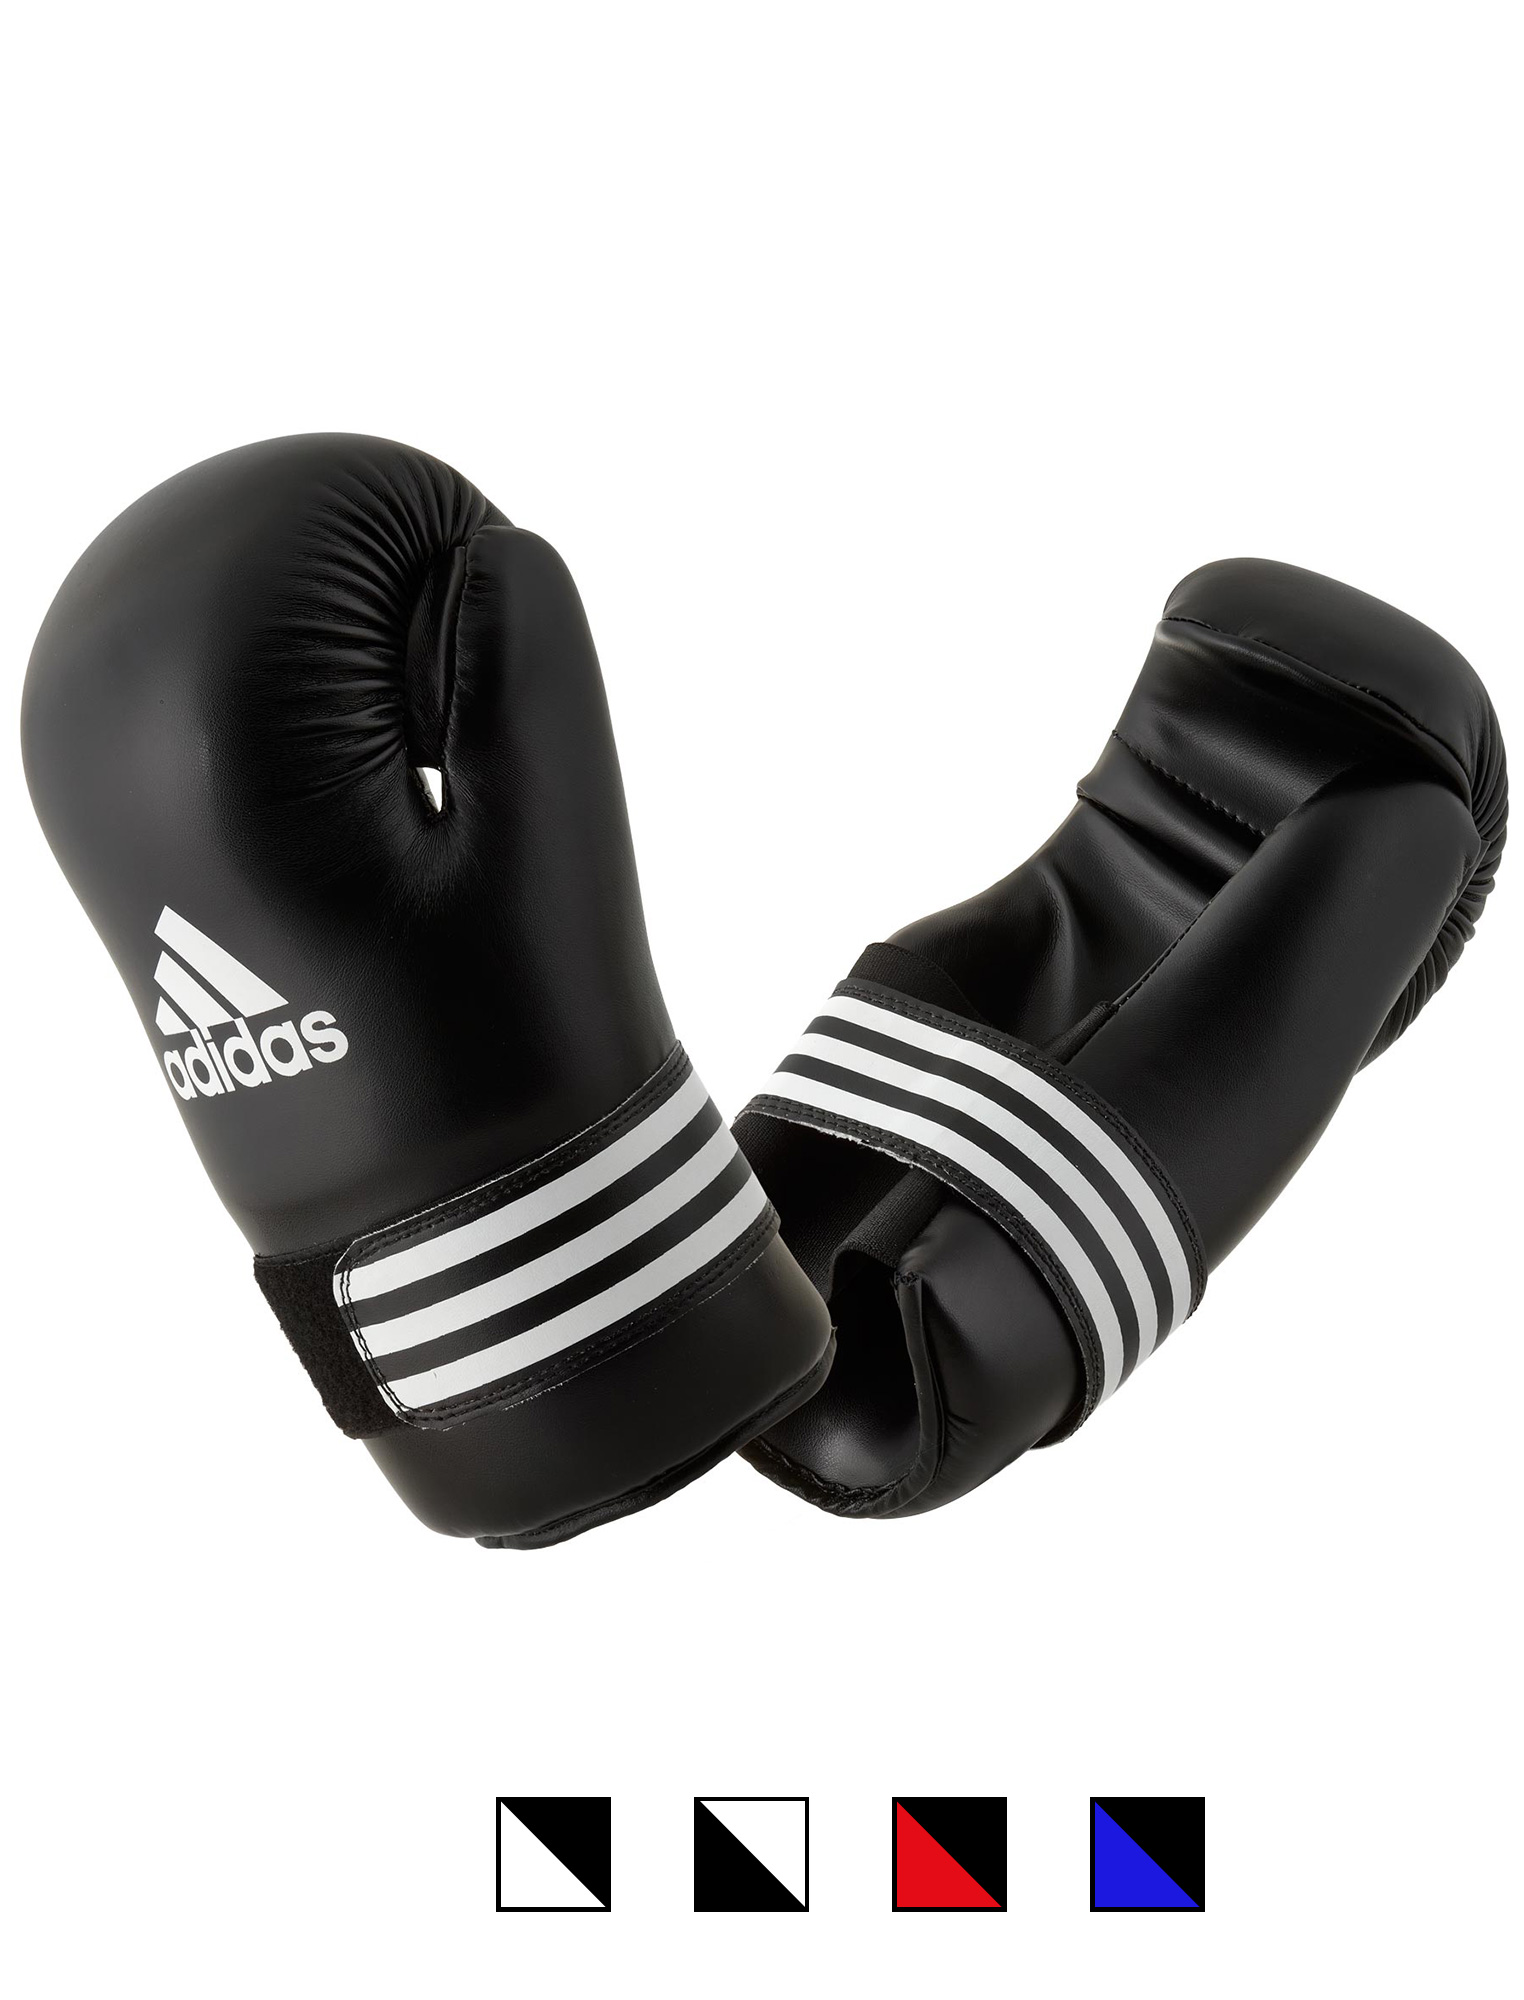 adidas semi contact kick boxing glove ADIBFC01, black/white